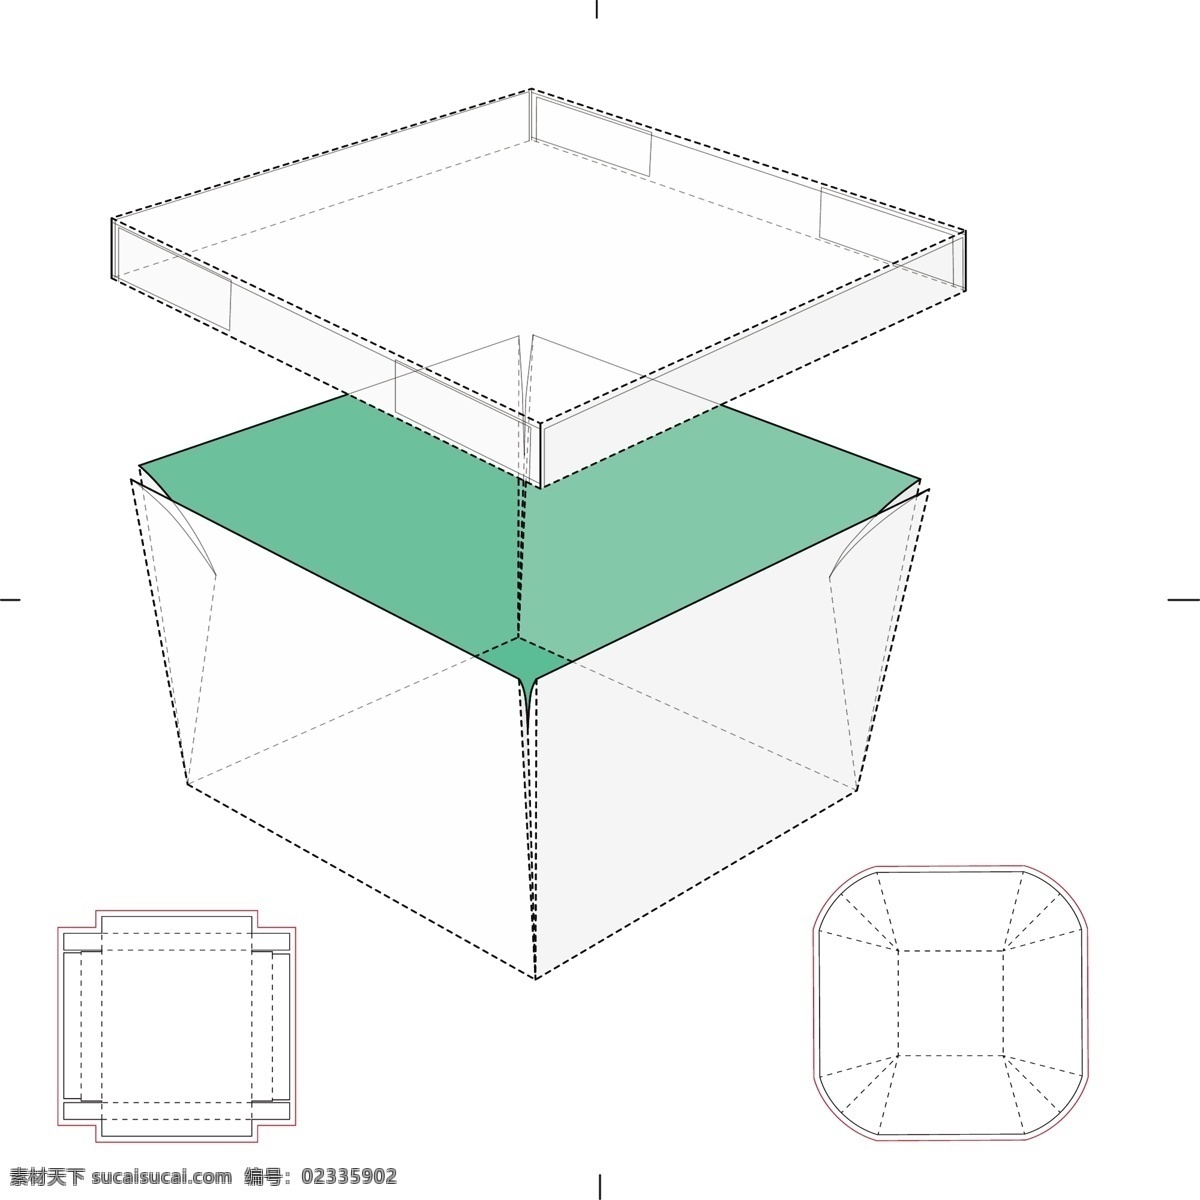 包装盒设计 包装盒模板 包装盒 展开示意图 手绘 纸盒包装 矢量 包装设计